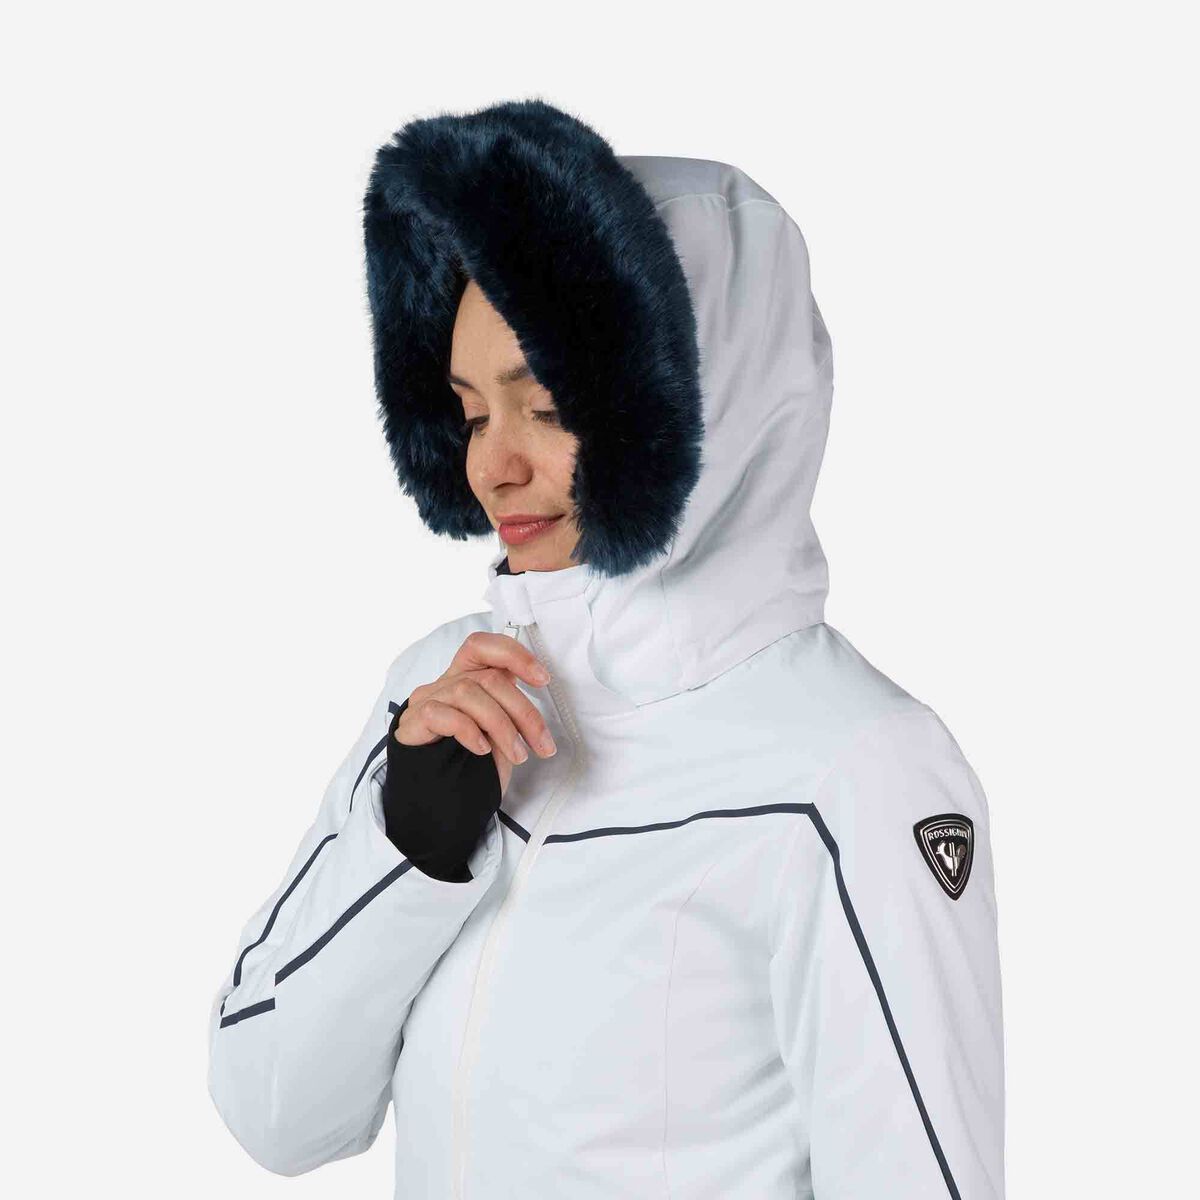 Russian Winter Ski Suit For Men Women Black White Warm Suit